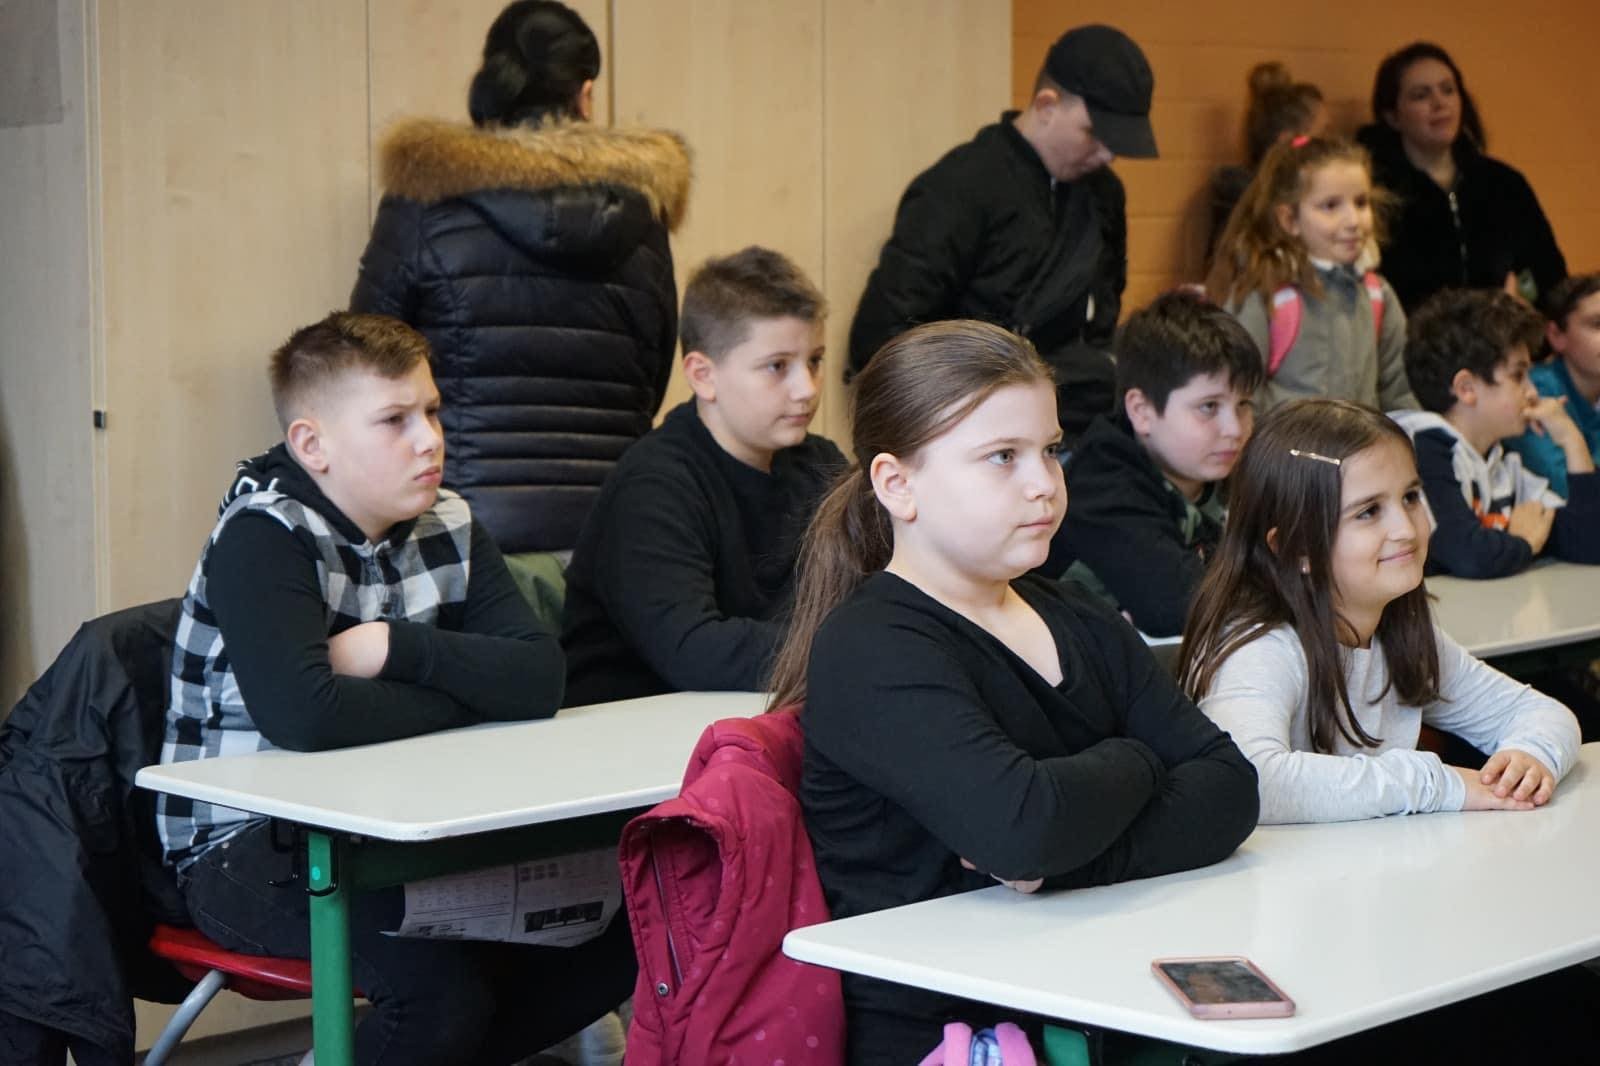 Hapet shkolla shqipe në Fulda të Gjermanisë